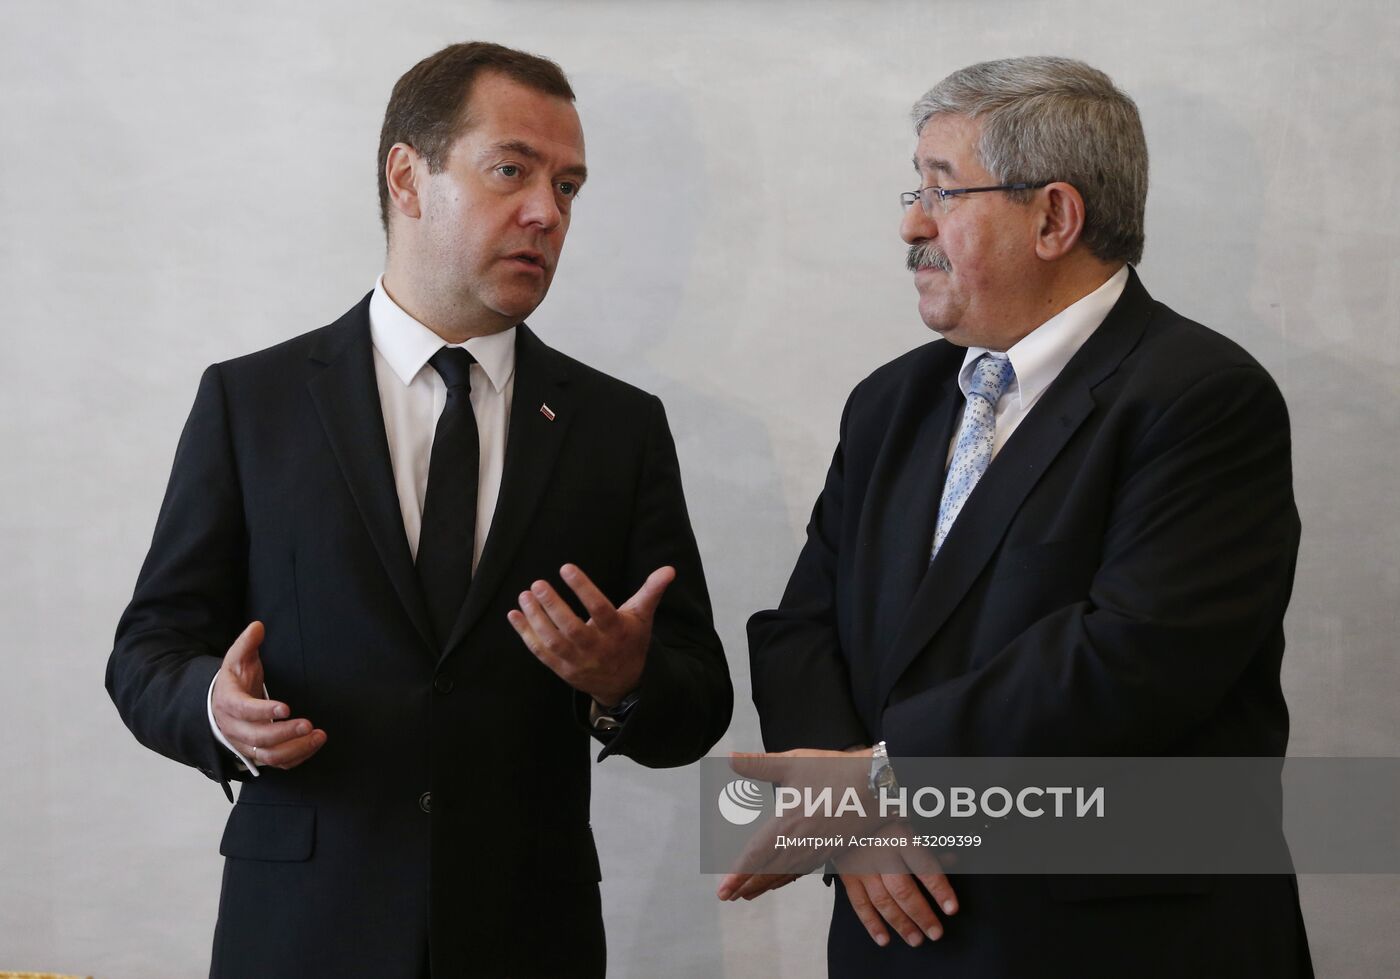 Официальный визит премьер-министра РФ Д. Медведева в Алжир. День второй